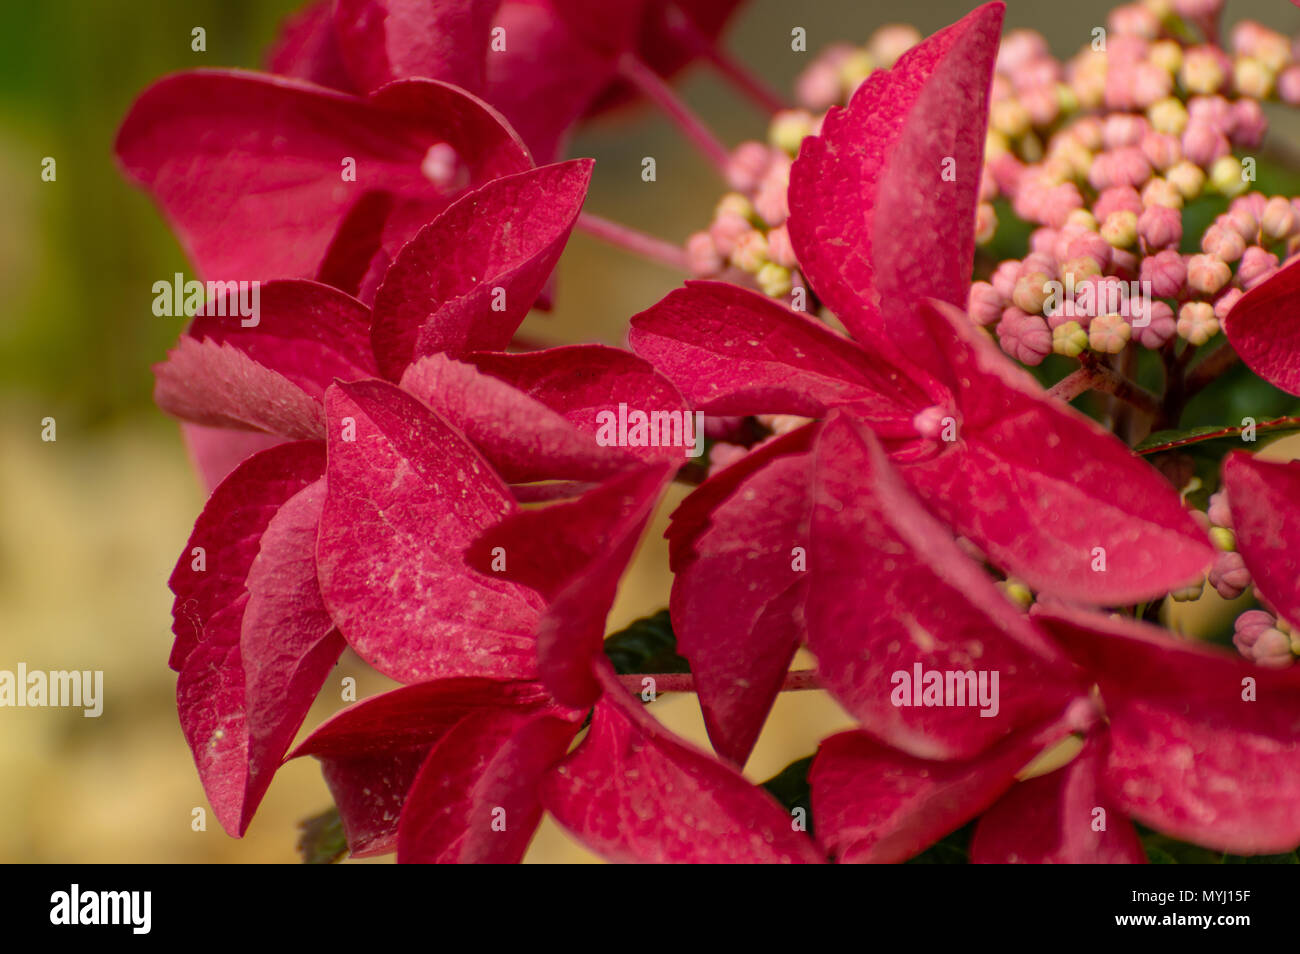 Bunte rosa und rote Hortensie Knospen und Blüten, in einer natürlichen Umgebung, mit einem geringen Tiefenschärfe. Stockfoto